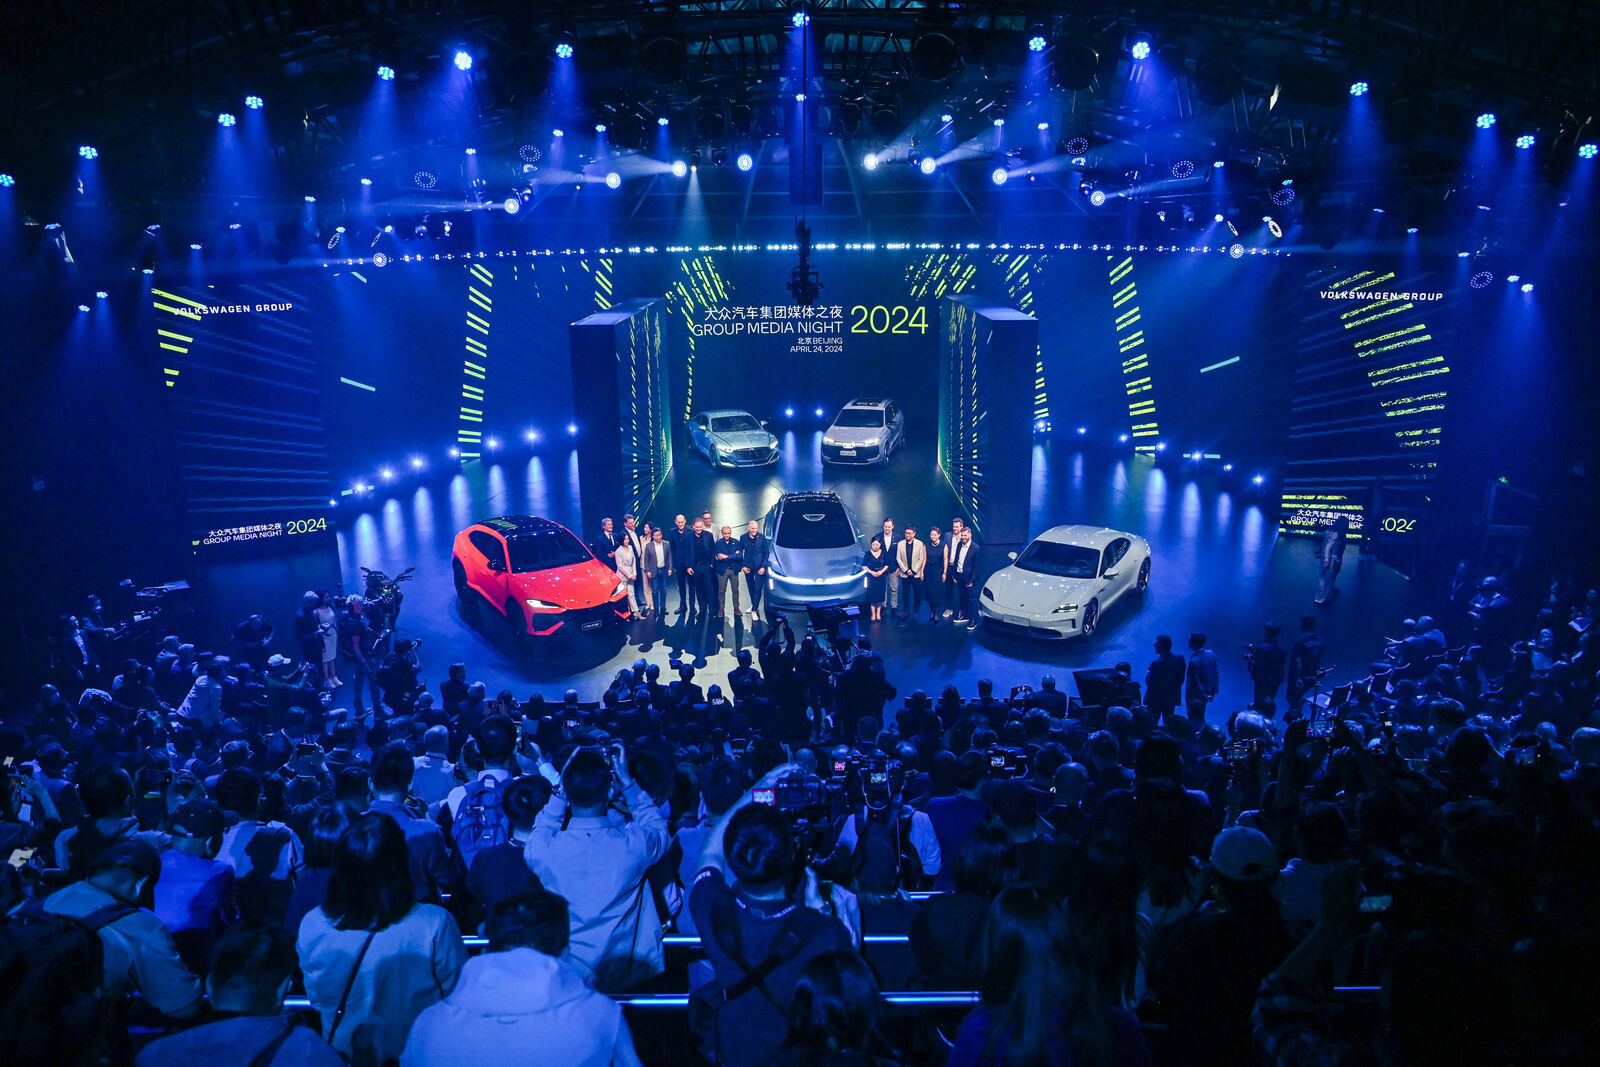 Eine große Menschenmenge besucht die Veranstaltung "Group Media Night 2024", bei der mehrere hochwertige Autos auf der Bühne unter heller blauer Beleuchtung präsentiert werden.